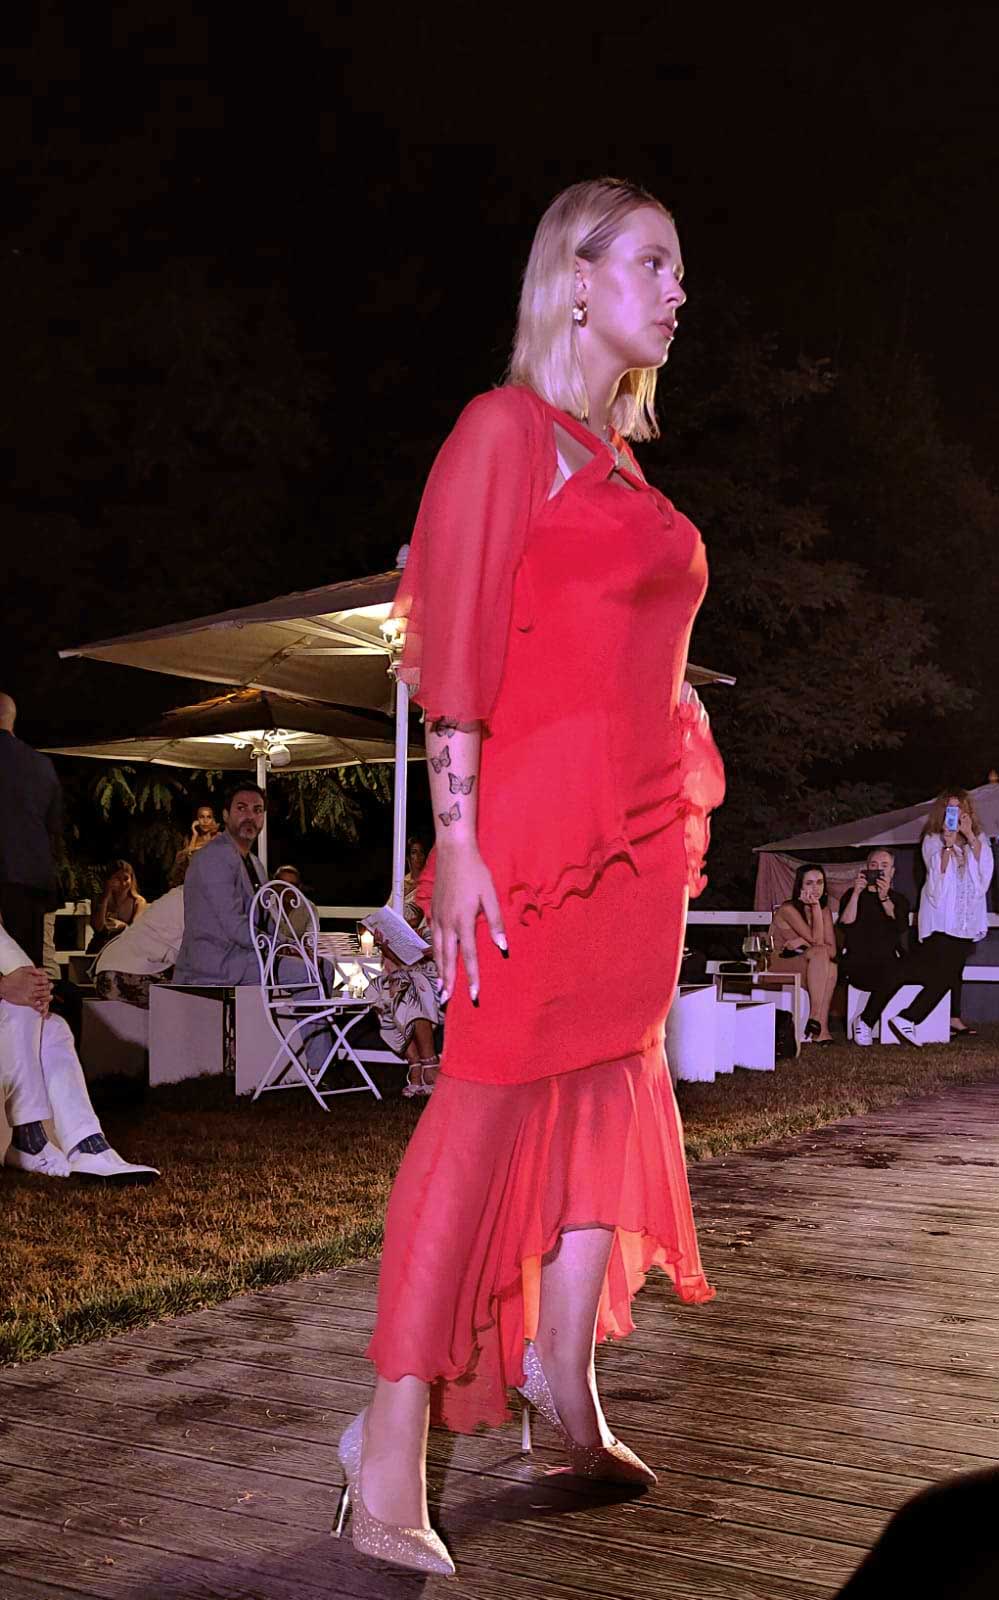 Evento World Top Model Roma da Profumo Sfilata abiti Elins Moda - vestire ragazza di rosso - foto modella vestiti da cerimonia donna